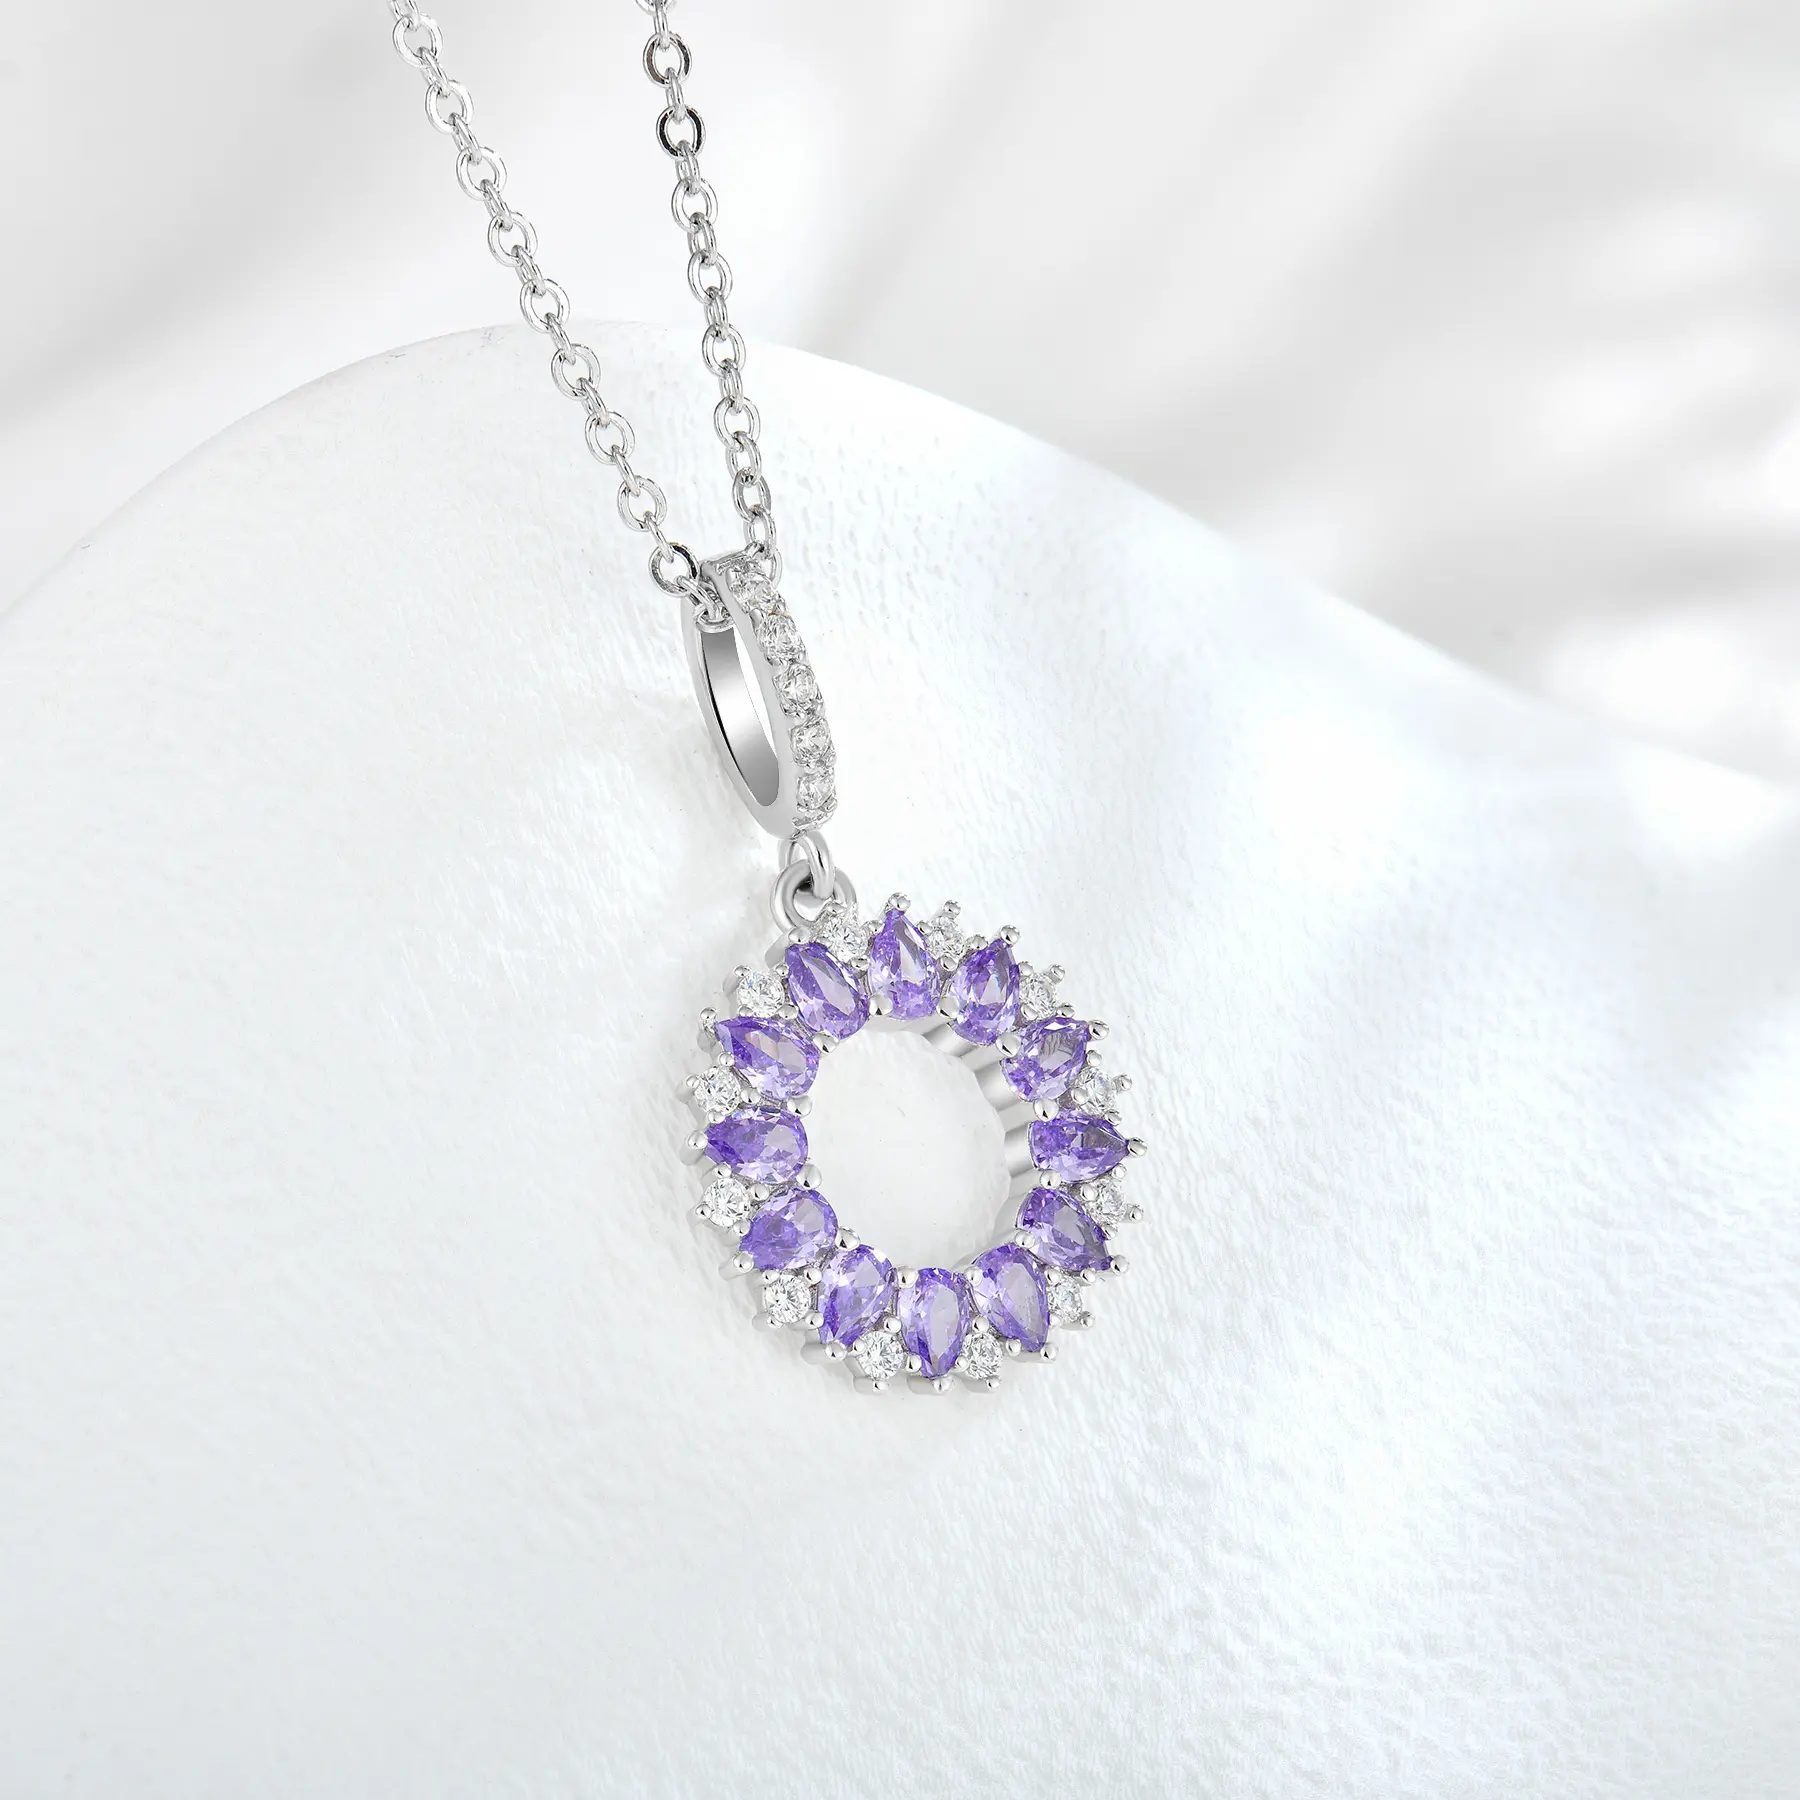 Nouveau design populaire dames 925 pur argent bijoux fins violet fleur cercle boucle d'oreille anneau collier ensemble de bijoux